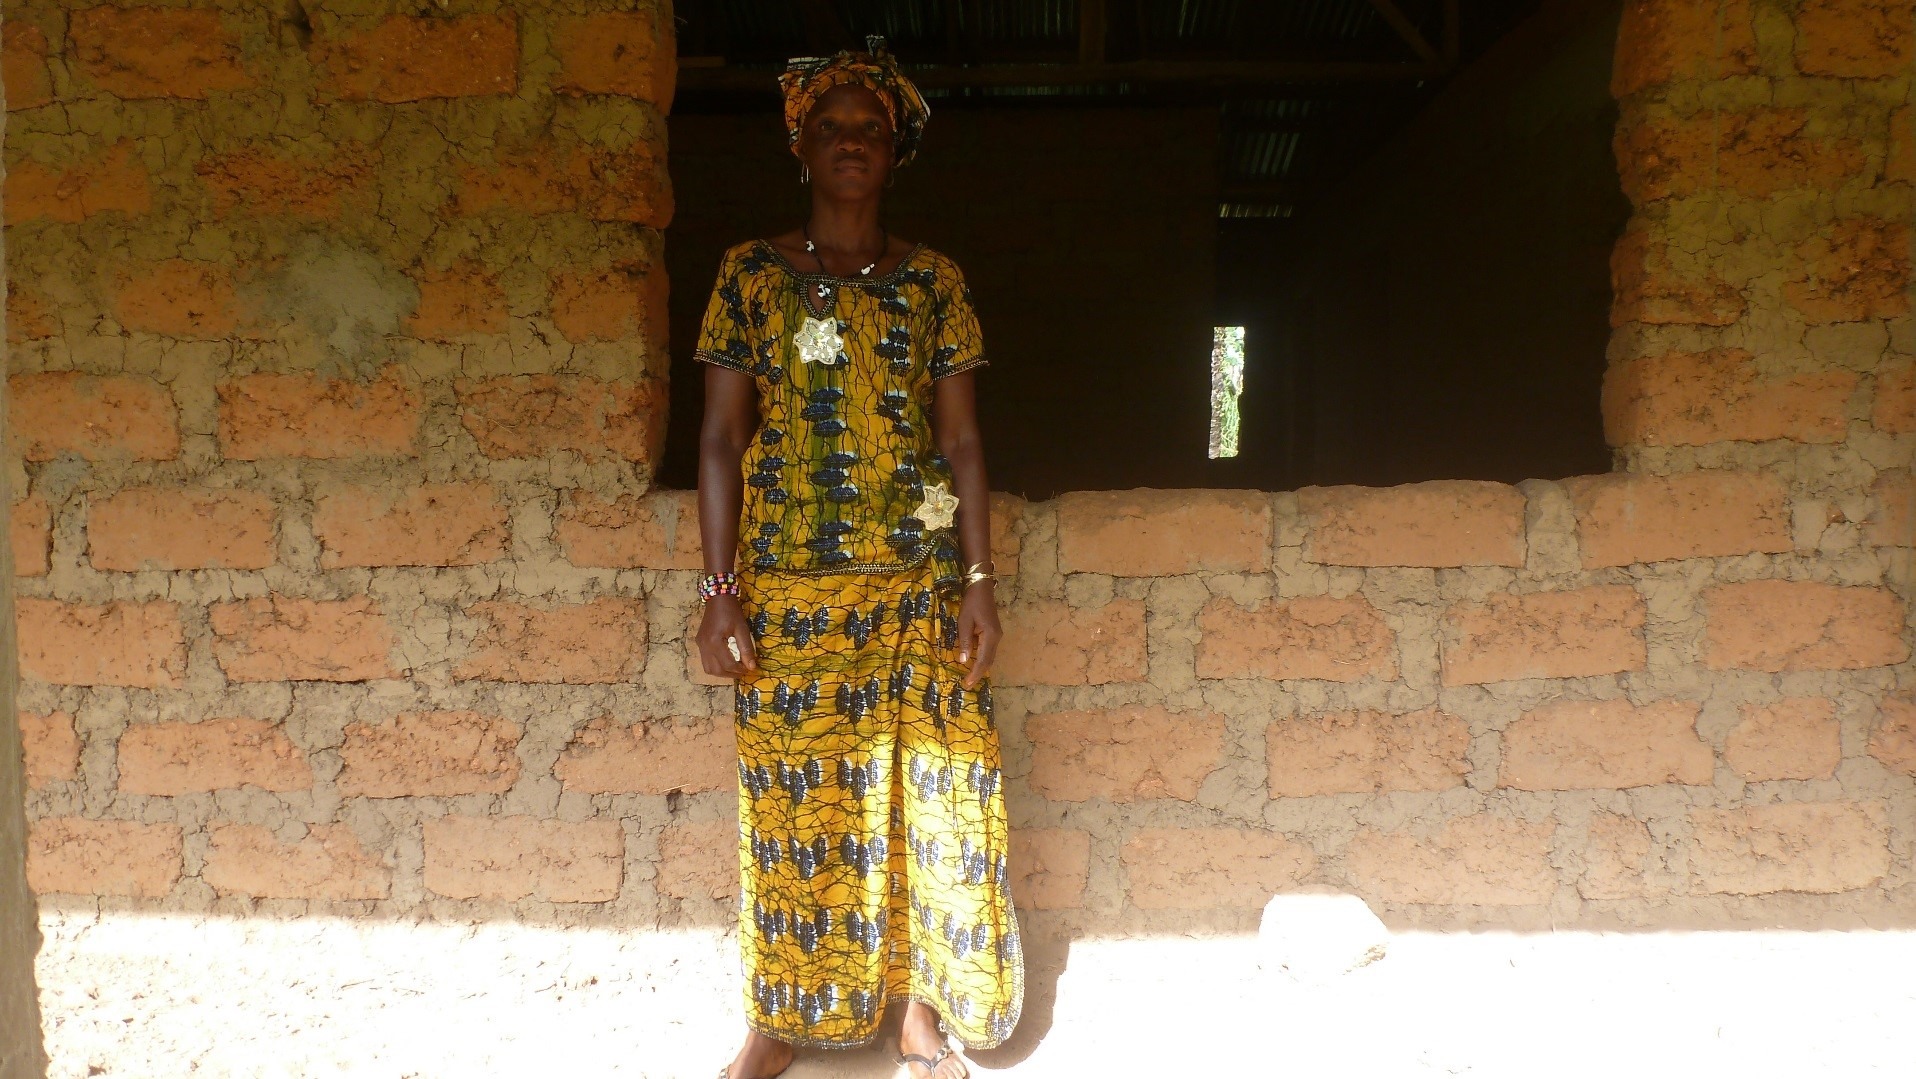 Sierra Leone SNAP VSLA woman participant